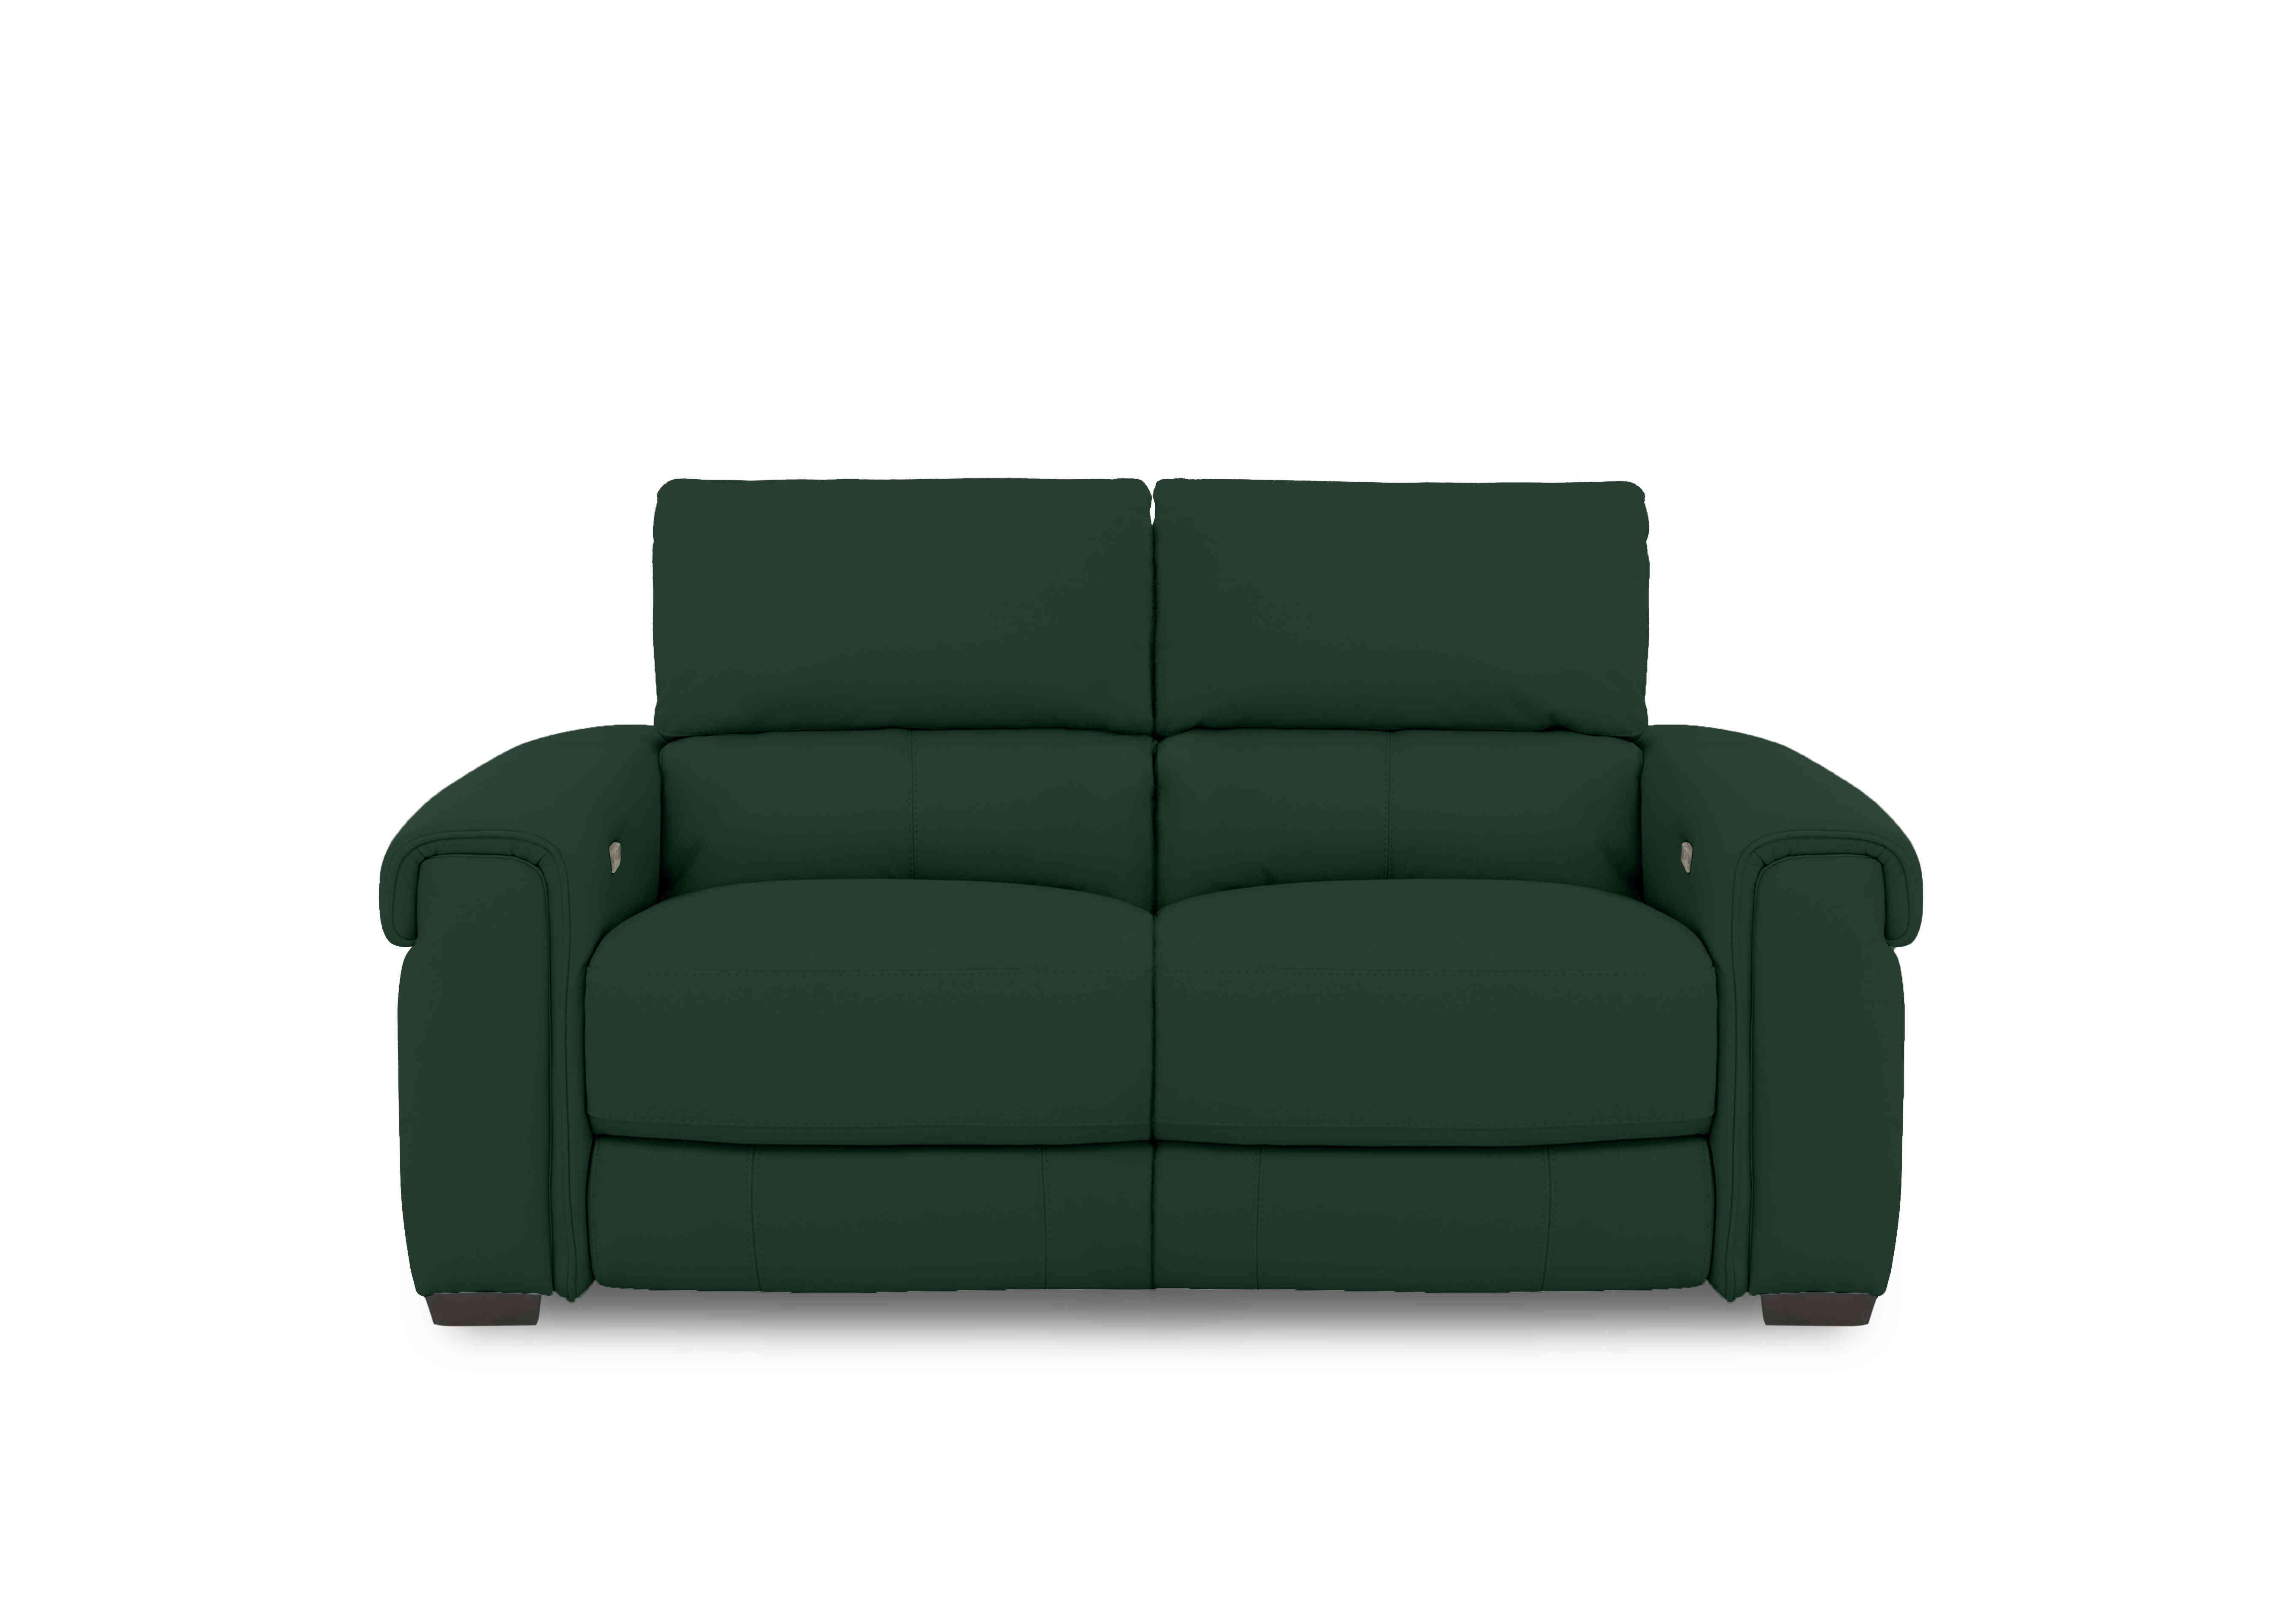 Nixon Fabric 2 Seater Sofa in Fab-Meg-R37 Emerald Green on Furniture Village